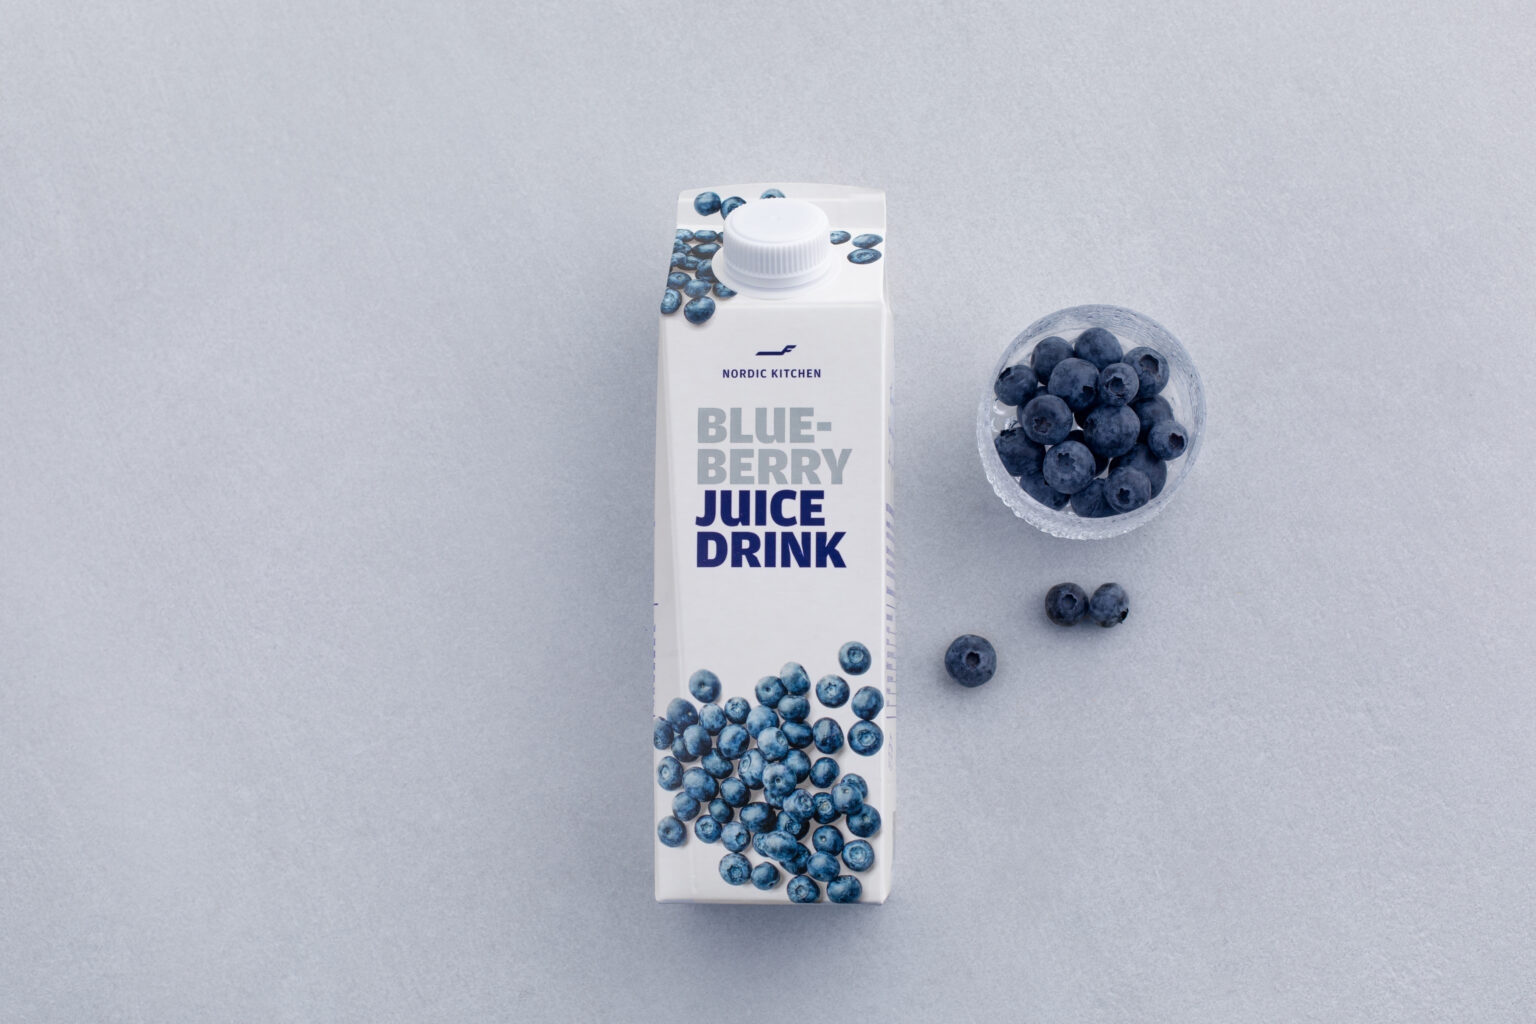 卖完鹿肉丸后 芬兰航空在超市售卖招牌蓝莓汁